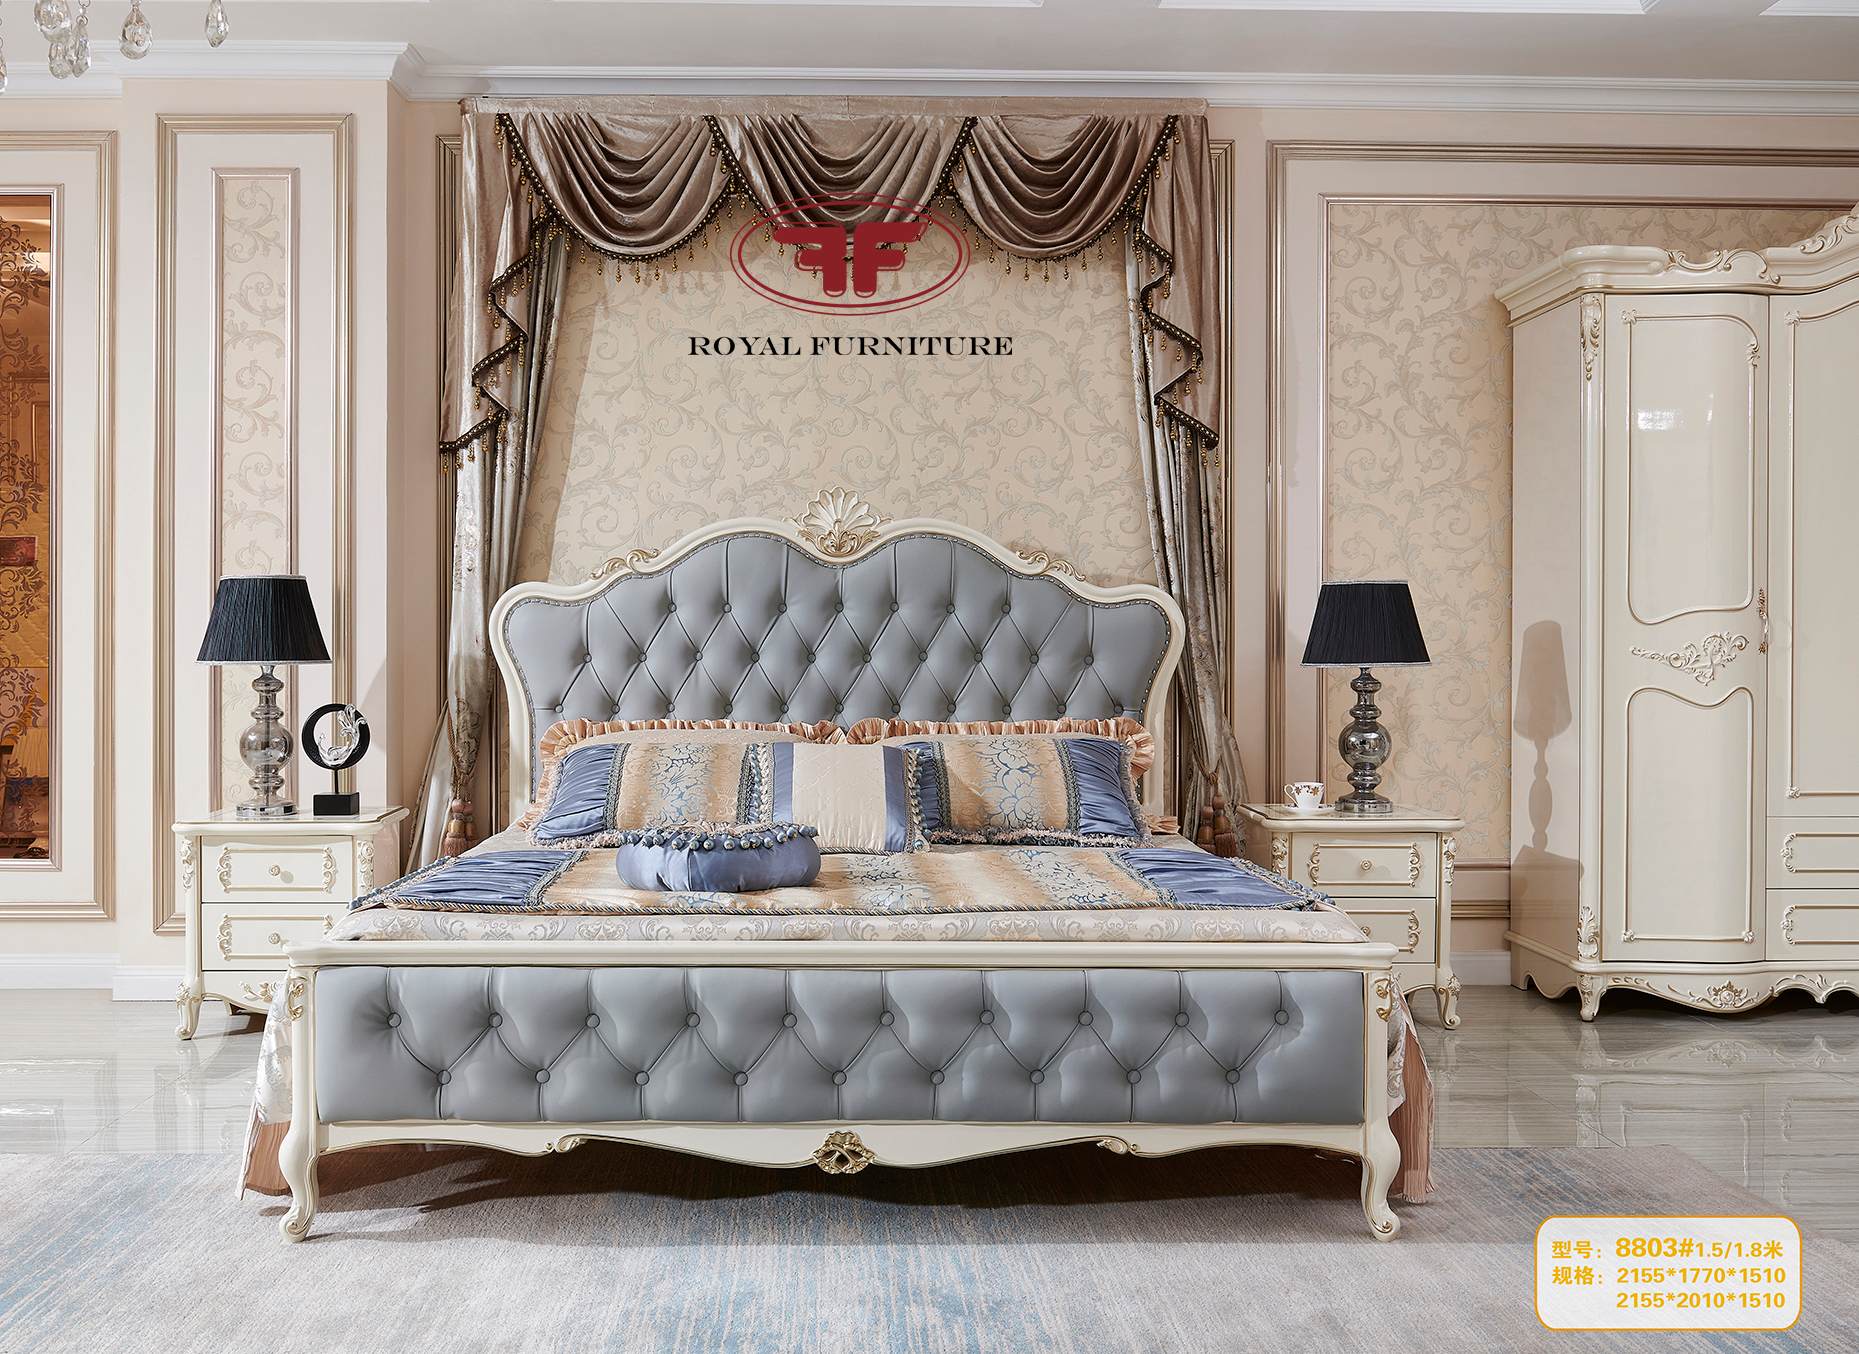 Với chất lượng hàng đầu từ các thương hiệu nổi tiếng trên thế giới, giường ngủ nhập khẩu tân cổ điển chắc chắn sẽ làm hài lòng những vị khách khó tính nhất. Với sự đa dạng về kiểu dáng và màu sắc, hãy để hình ảnh giúp bạn lựa chọn sản phẩm phù hợp nhất cho phòng ngủ của bạn.